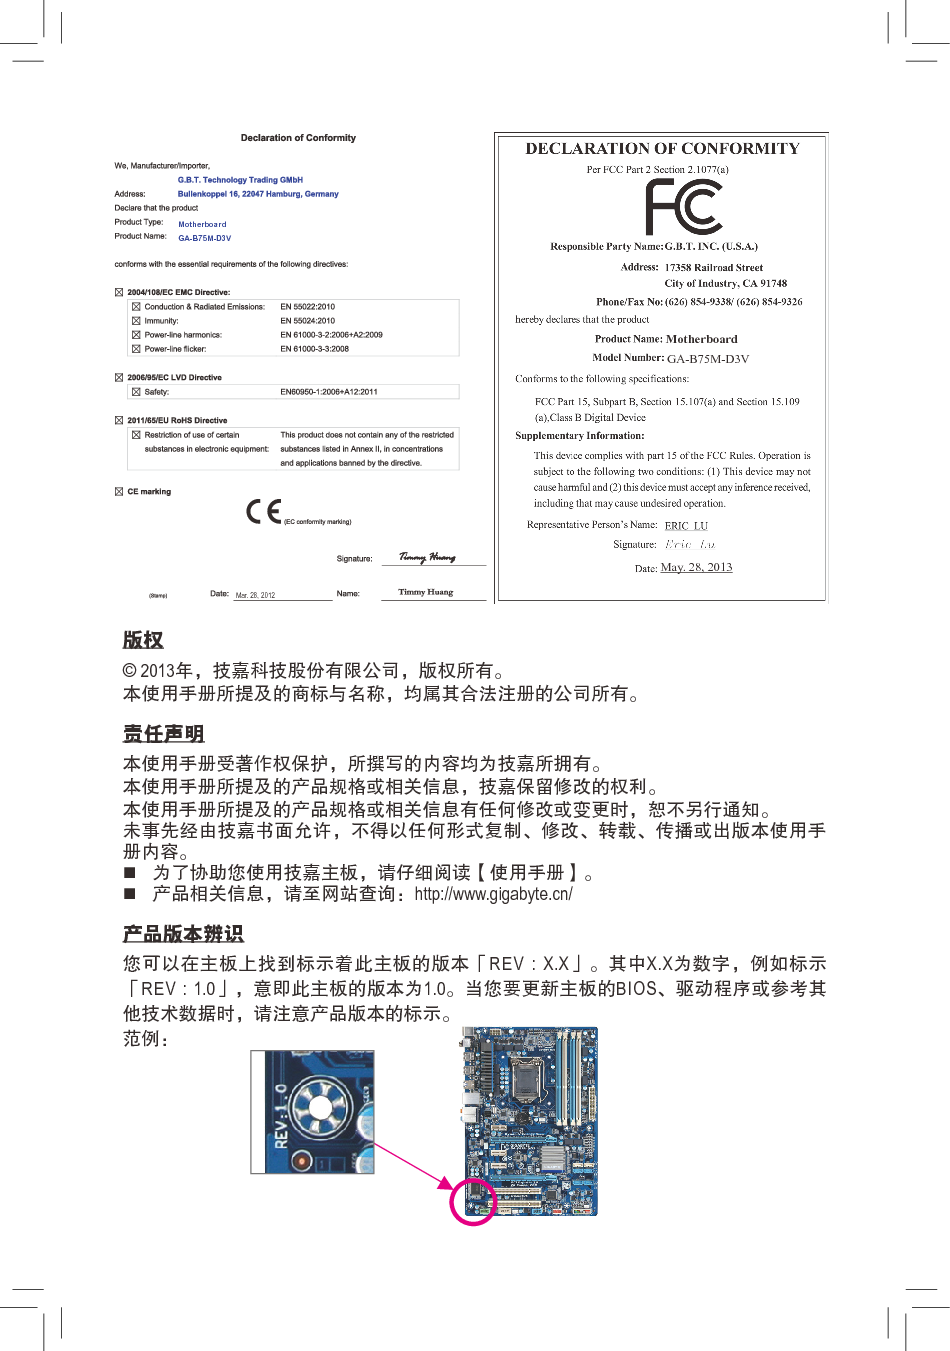 技嘉 Gigabyte GA-B75M-D3V 2002版 使用手册 第1页